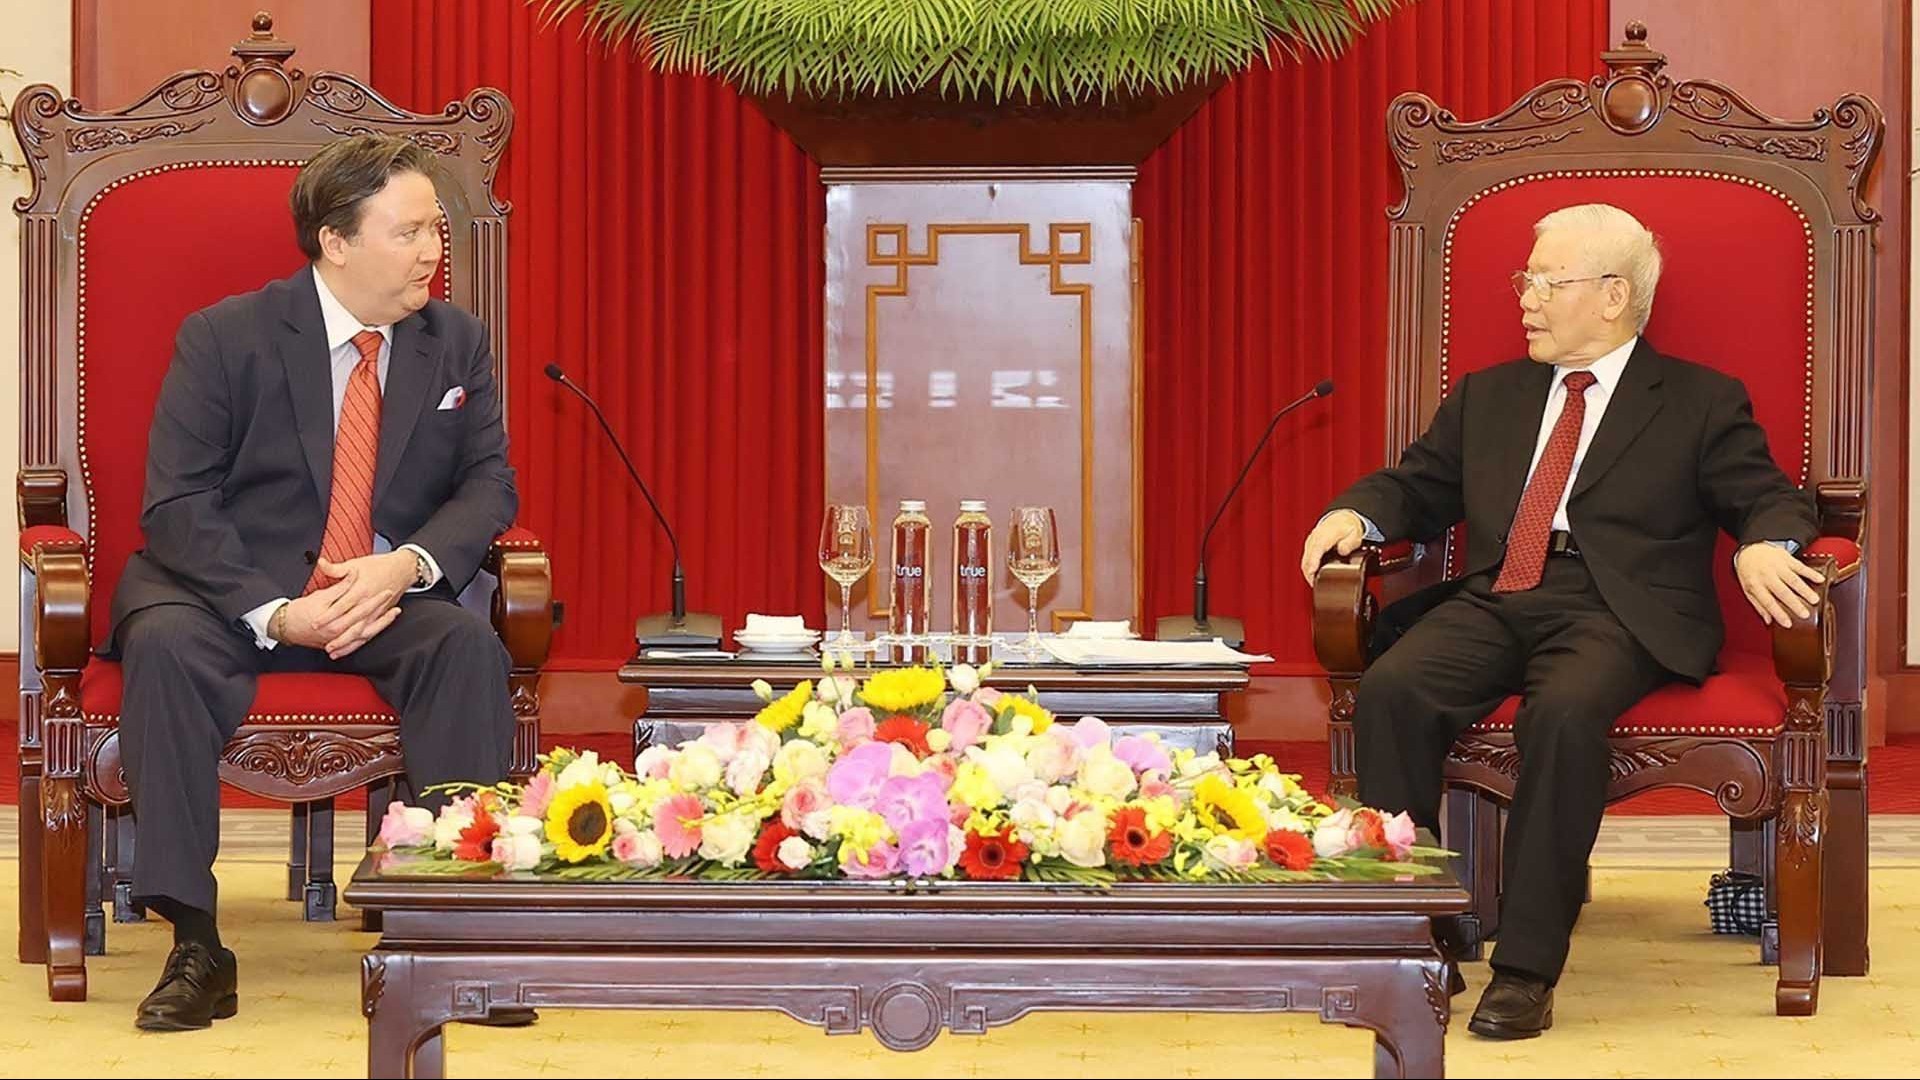 Tổng Bí thư Nguyễn Phú Trọng tiếp Đại sứ Hoa Kỳ tại Việt Nam Marc E. Knapper chào xã giao nhân dịp bắt đầu nhiệm kỳ